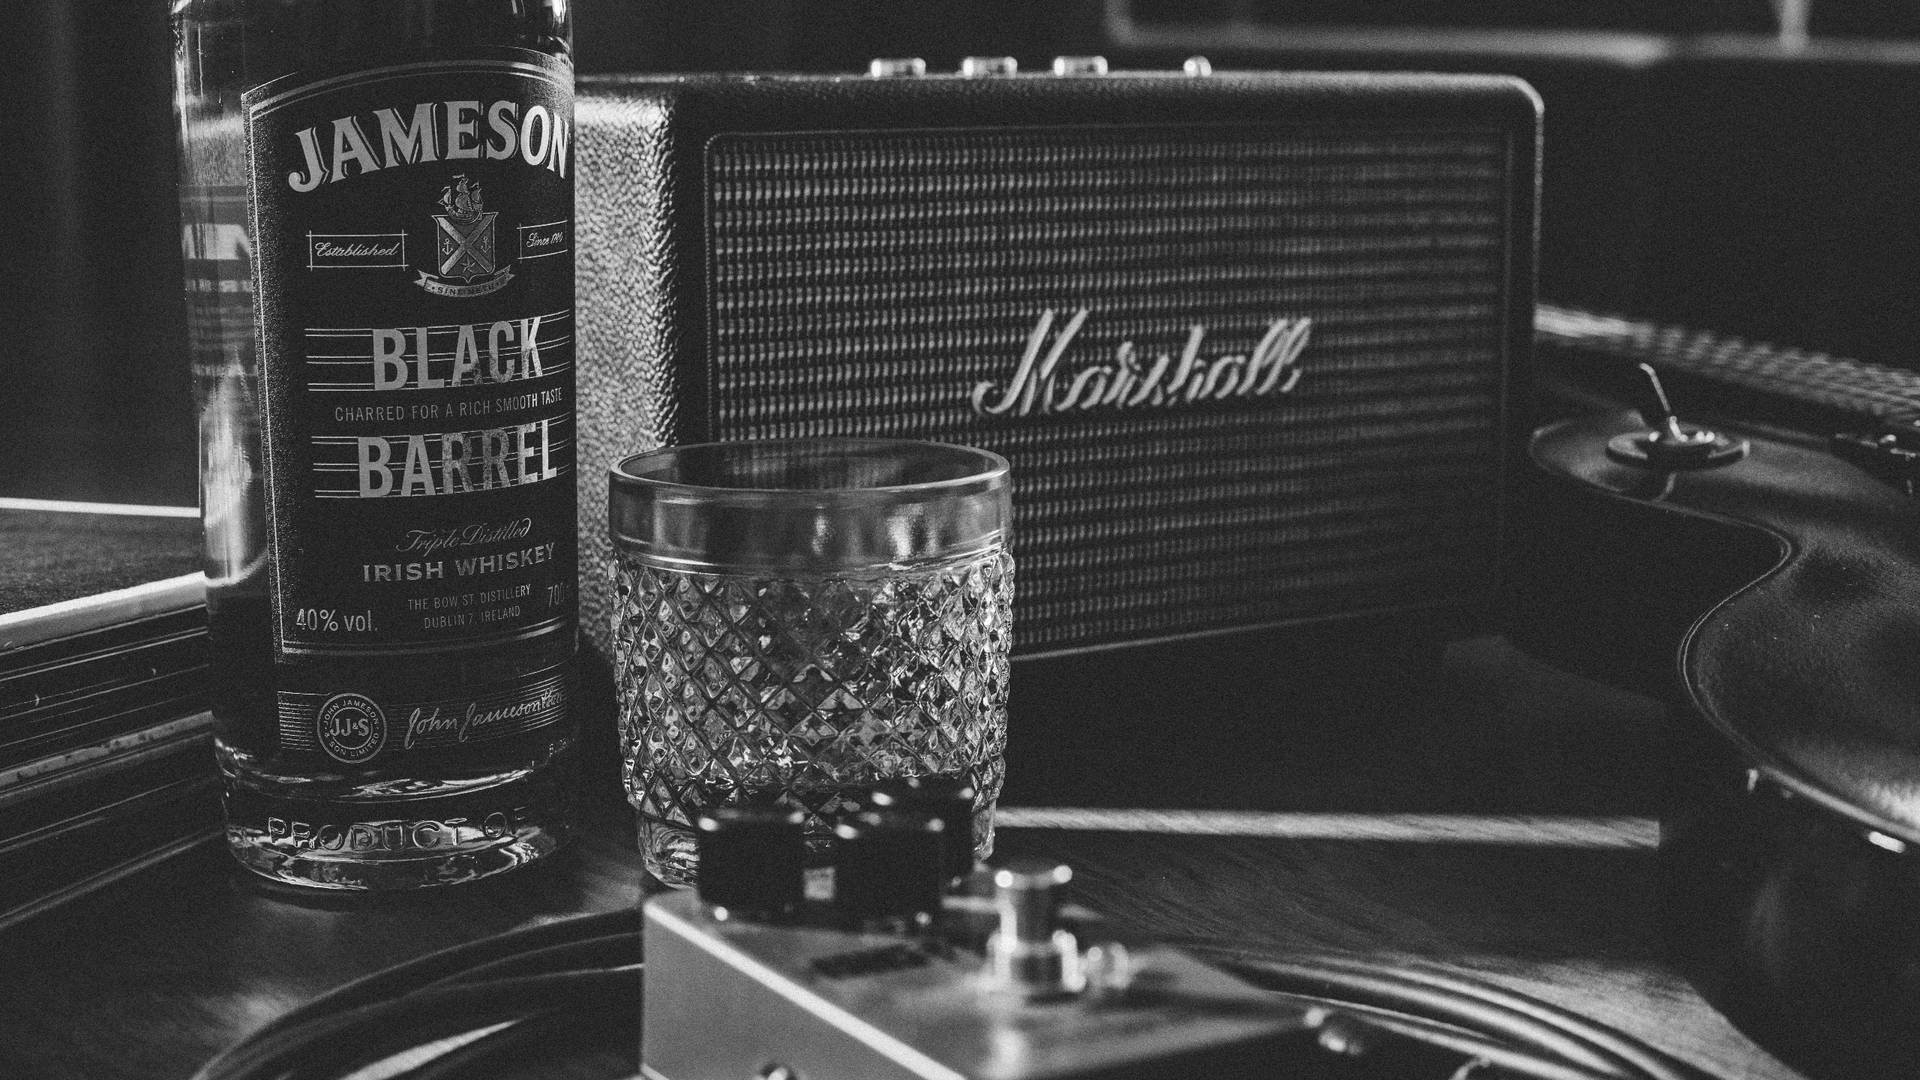 Marshall Speaker With Jameson Whiskey Wallpaper